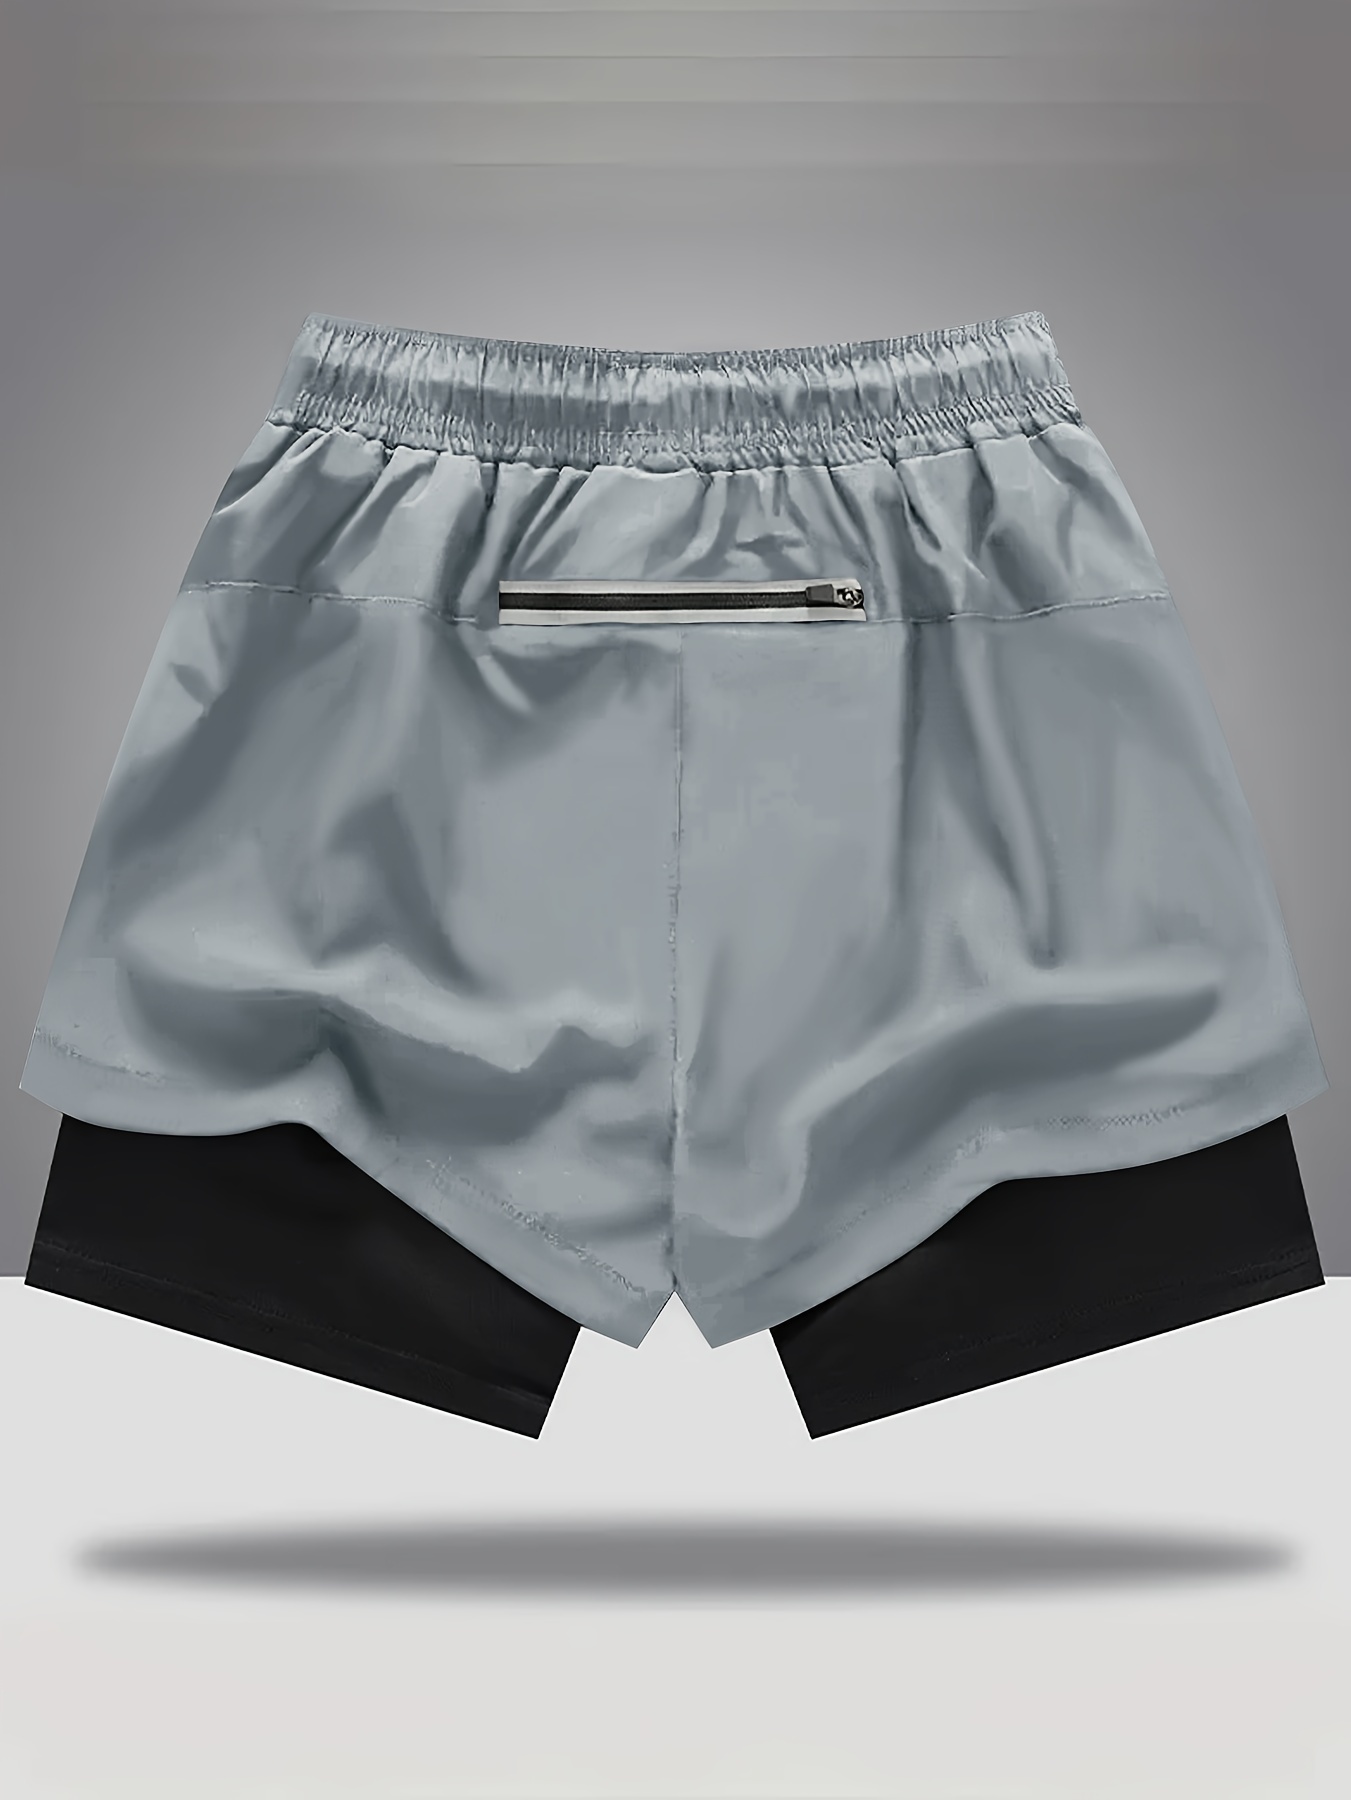 Pantalones Cortos de Gimnasio y Pantalones Cortos Deportivos para Hombre